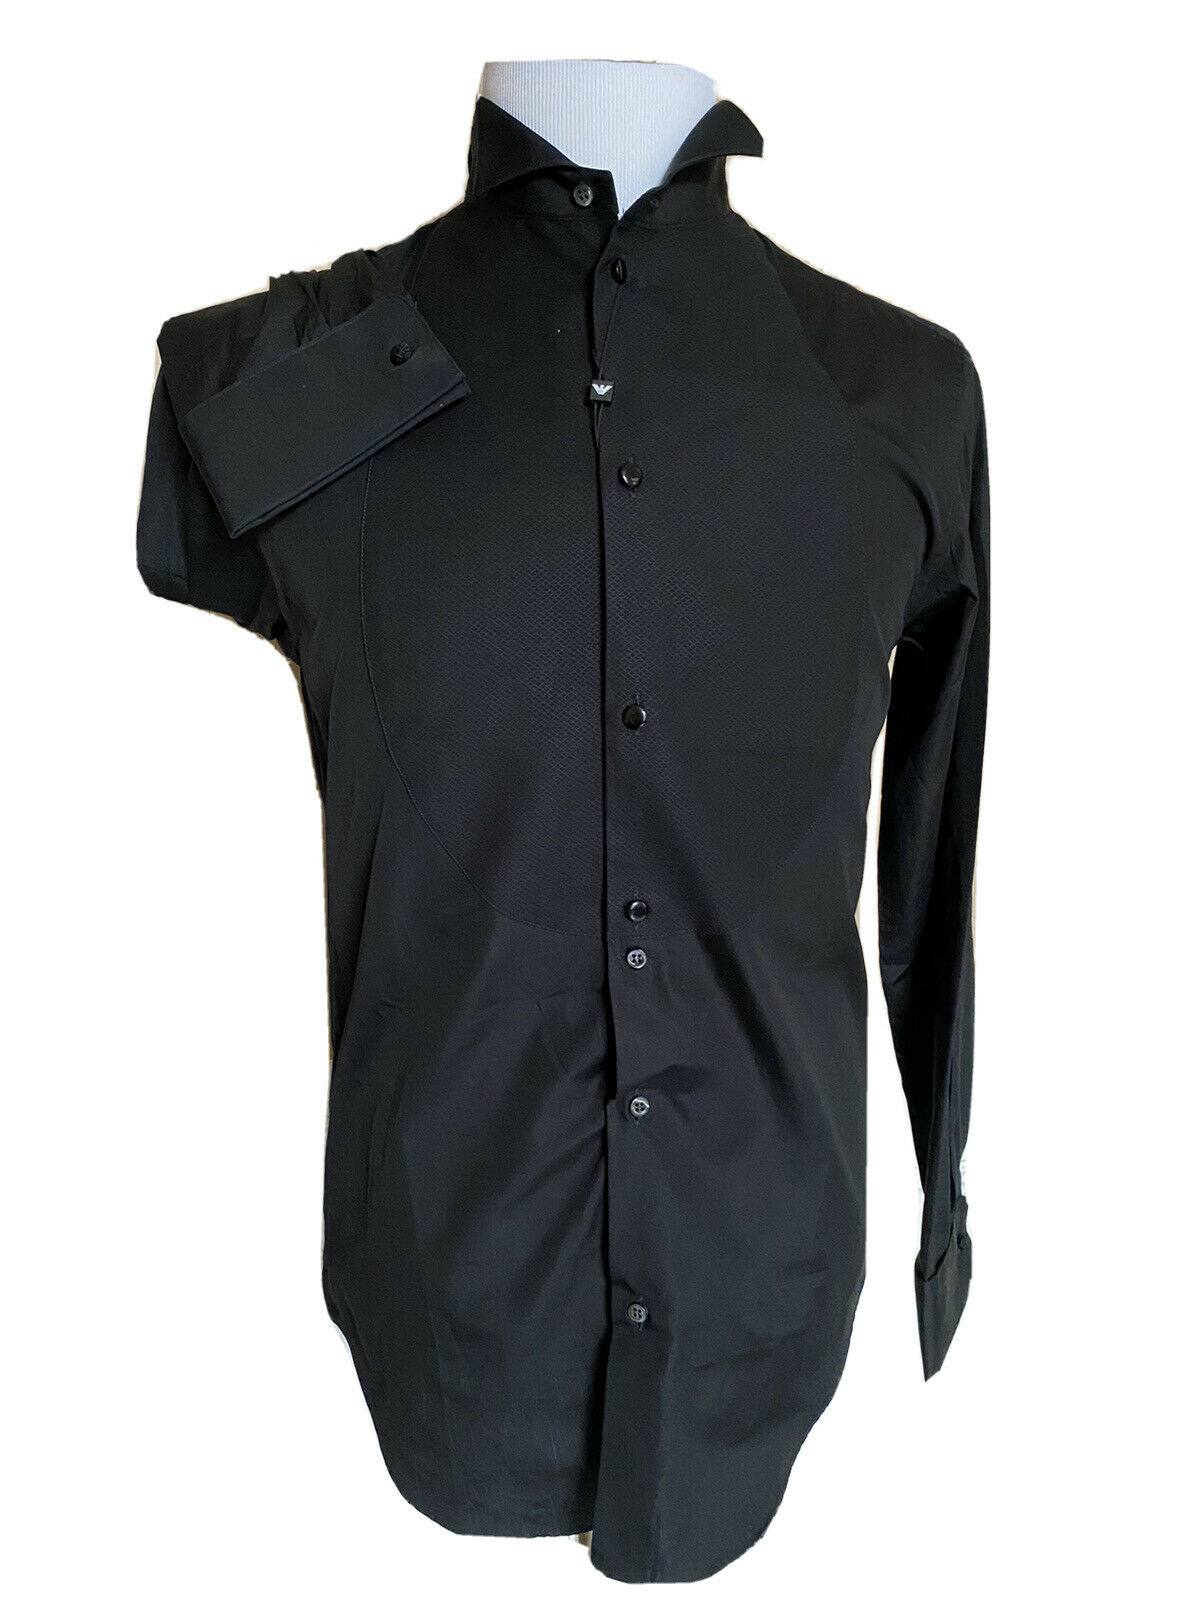 NWT $525 Emporio Armani Korean-Necked Black Dress Shirt  Size 40/15.75 11CS3T